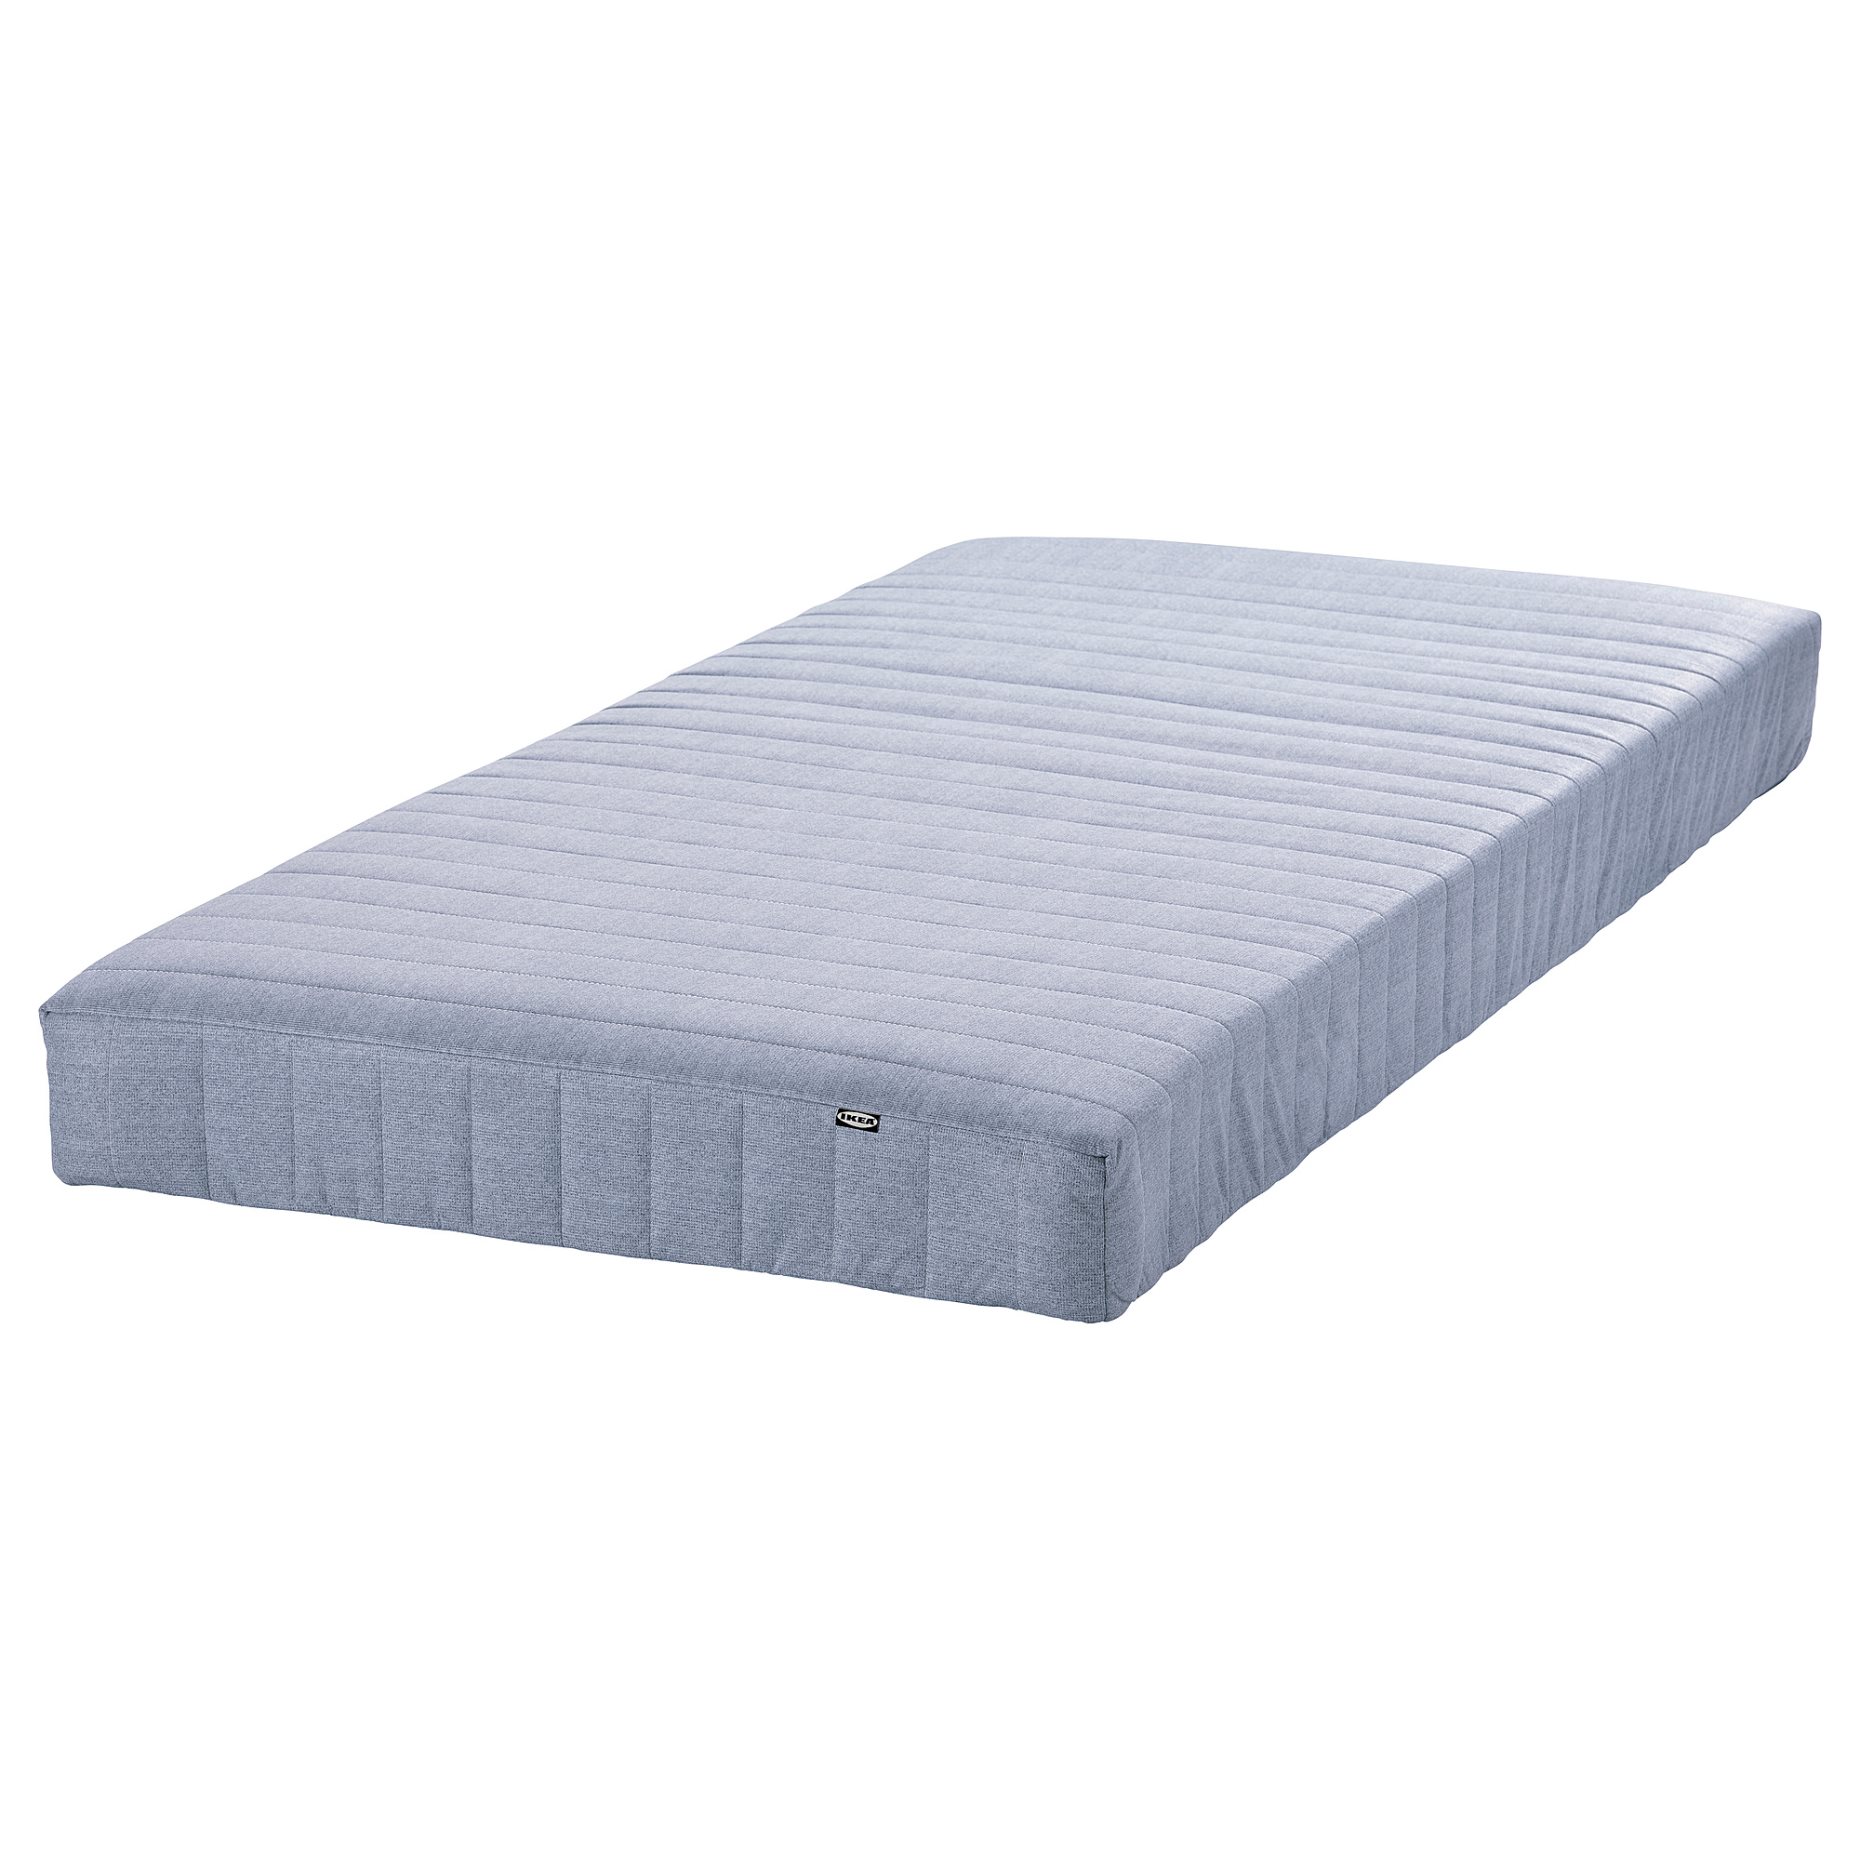 VADSÖ, sprung mattress extra firm, 90x200 cm, 604.535.88